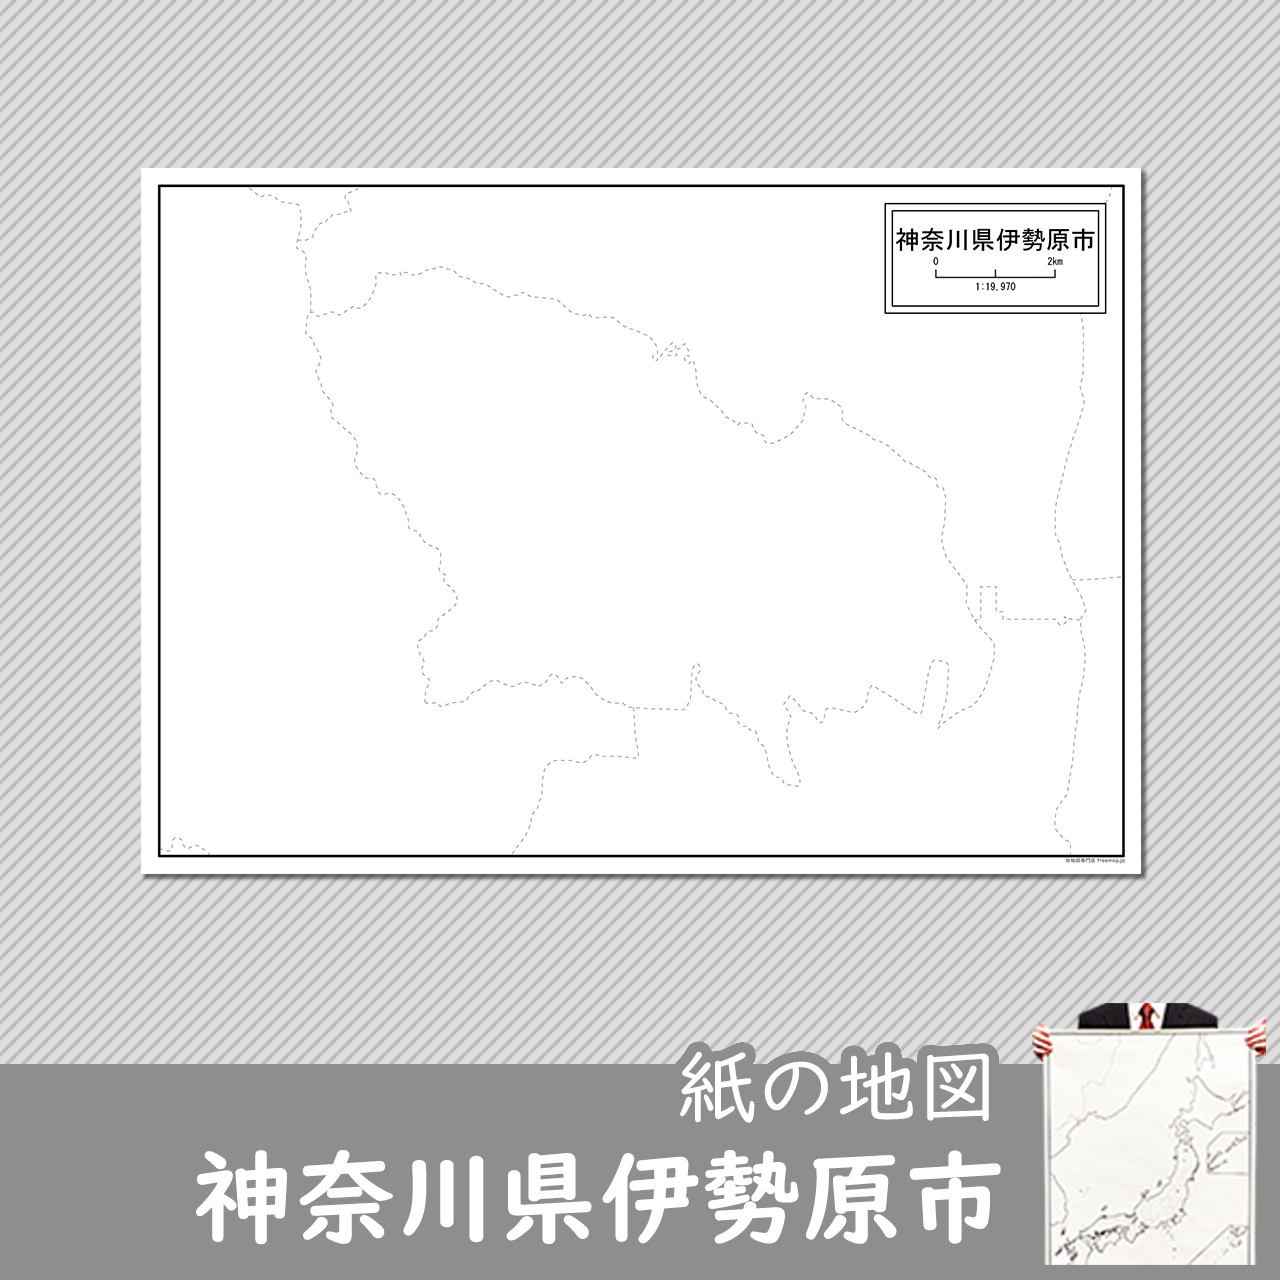 伊勢原市の紙の白地図のサムネイル